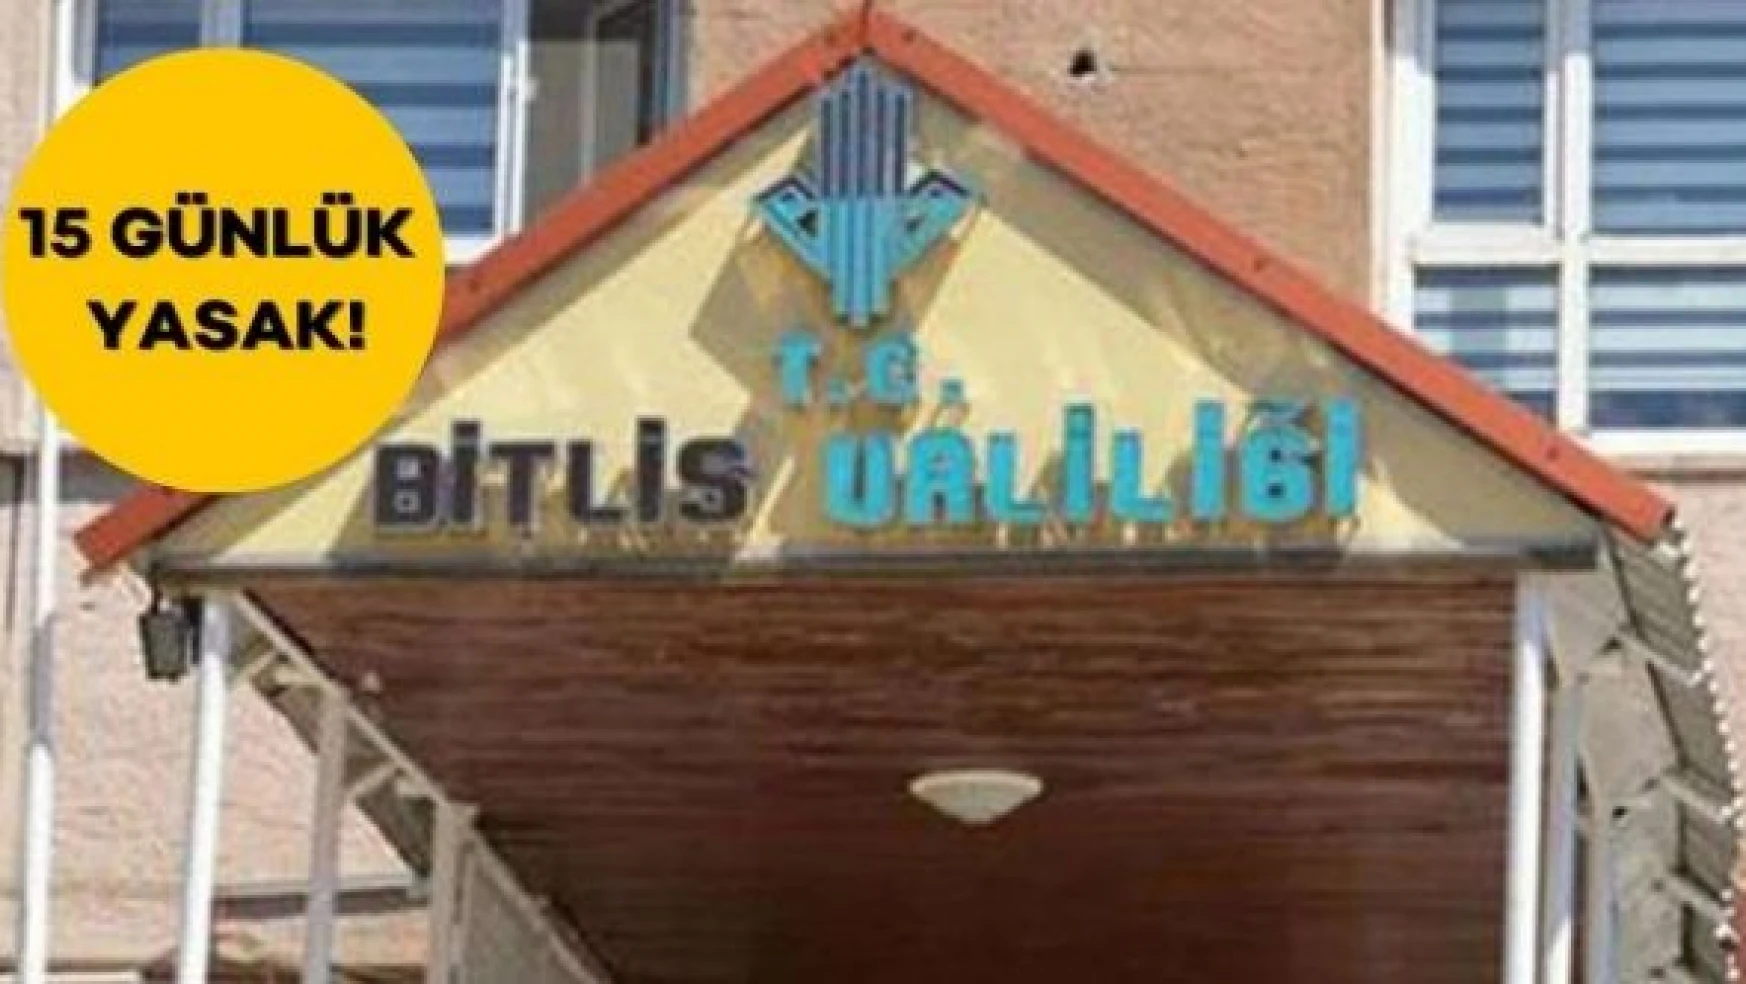 Bitlis'te 15 günlük yasak